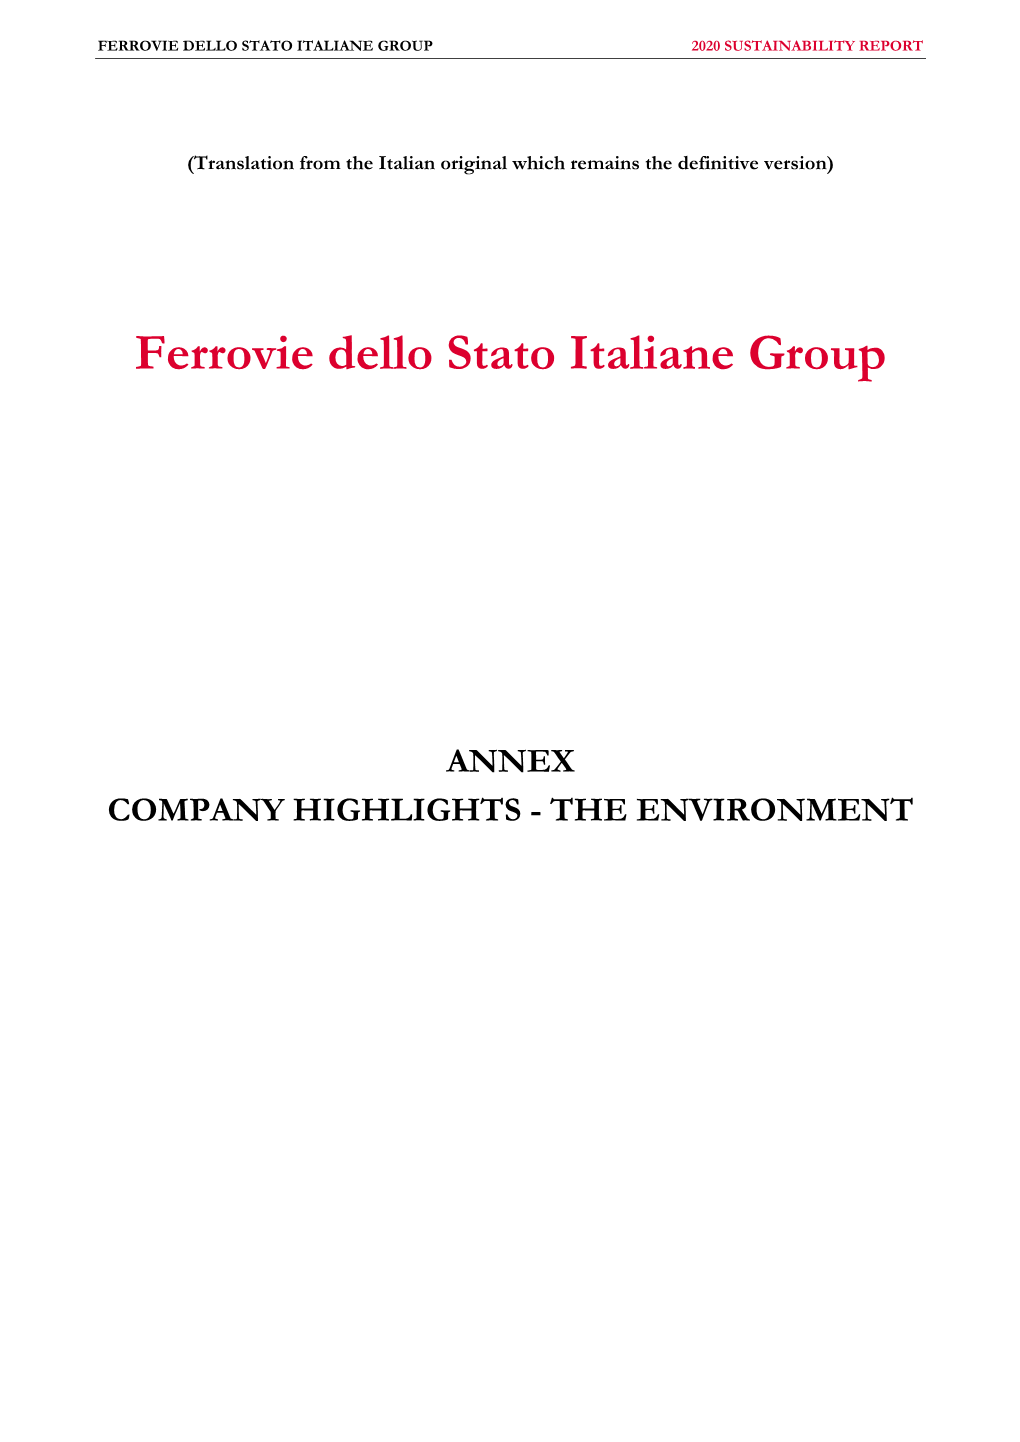 Ferrovie Dello Stato Italiane Group 2020 Sustainability Report